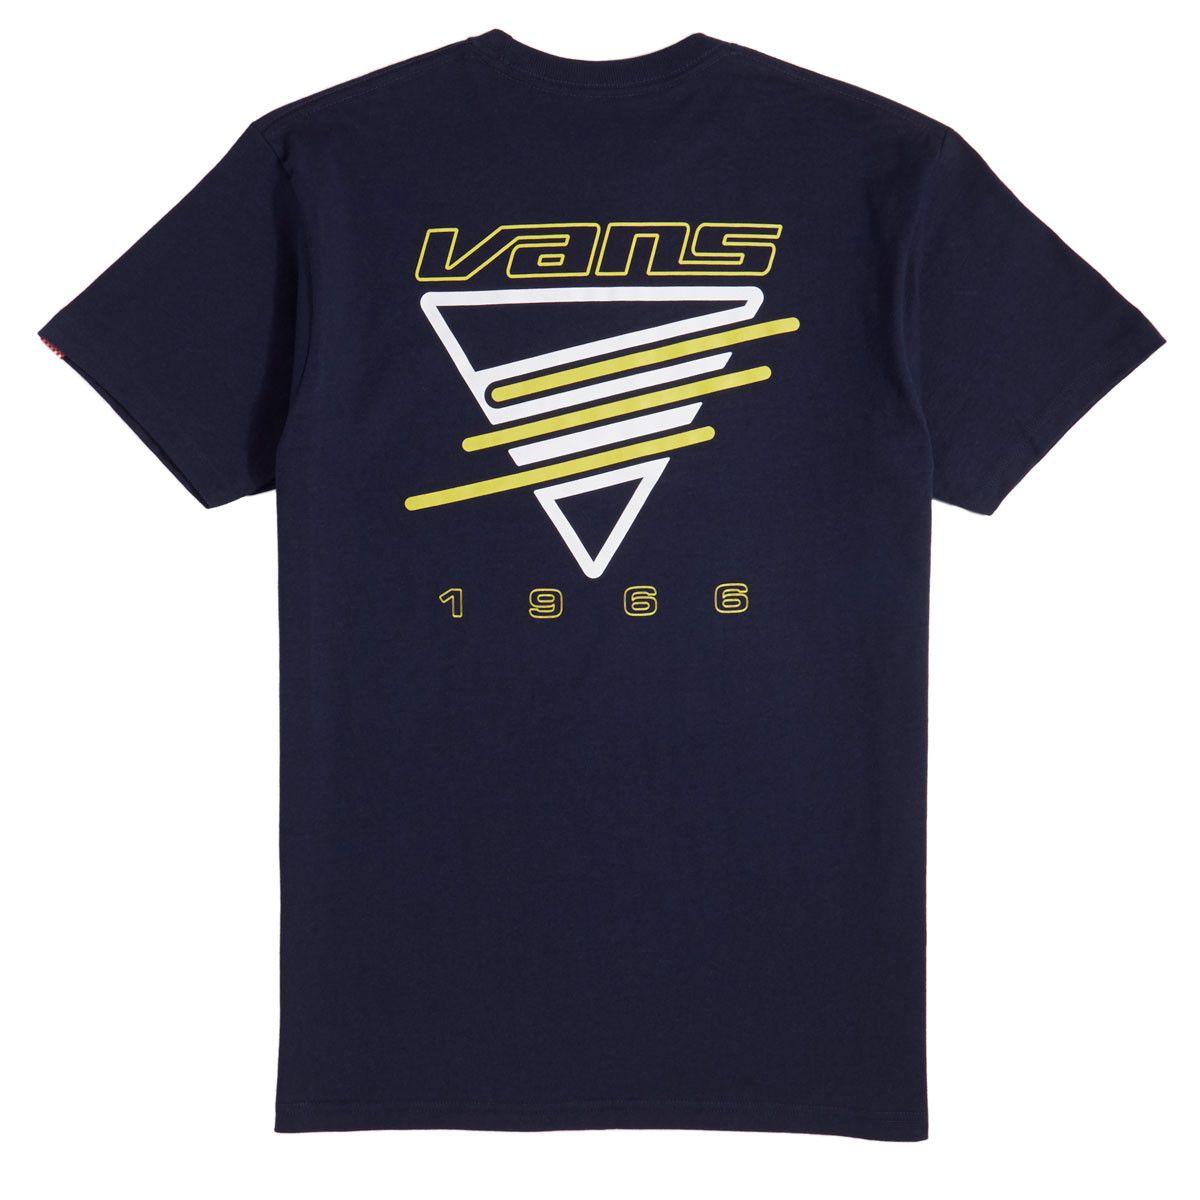 Cool Neon Vans Logo - Vans Neon Triangle T Shirt